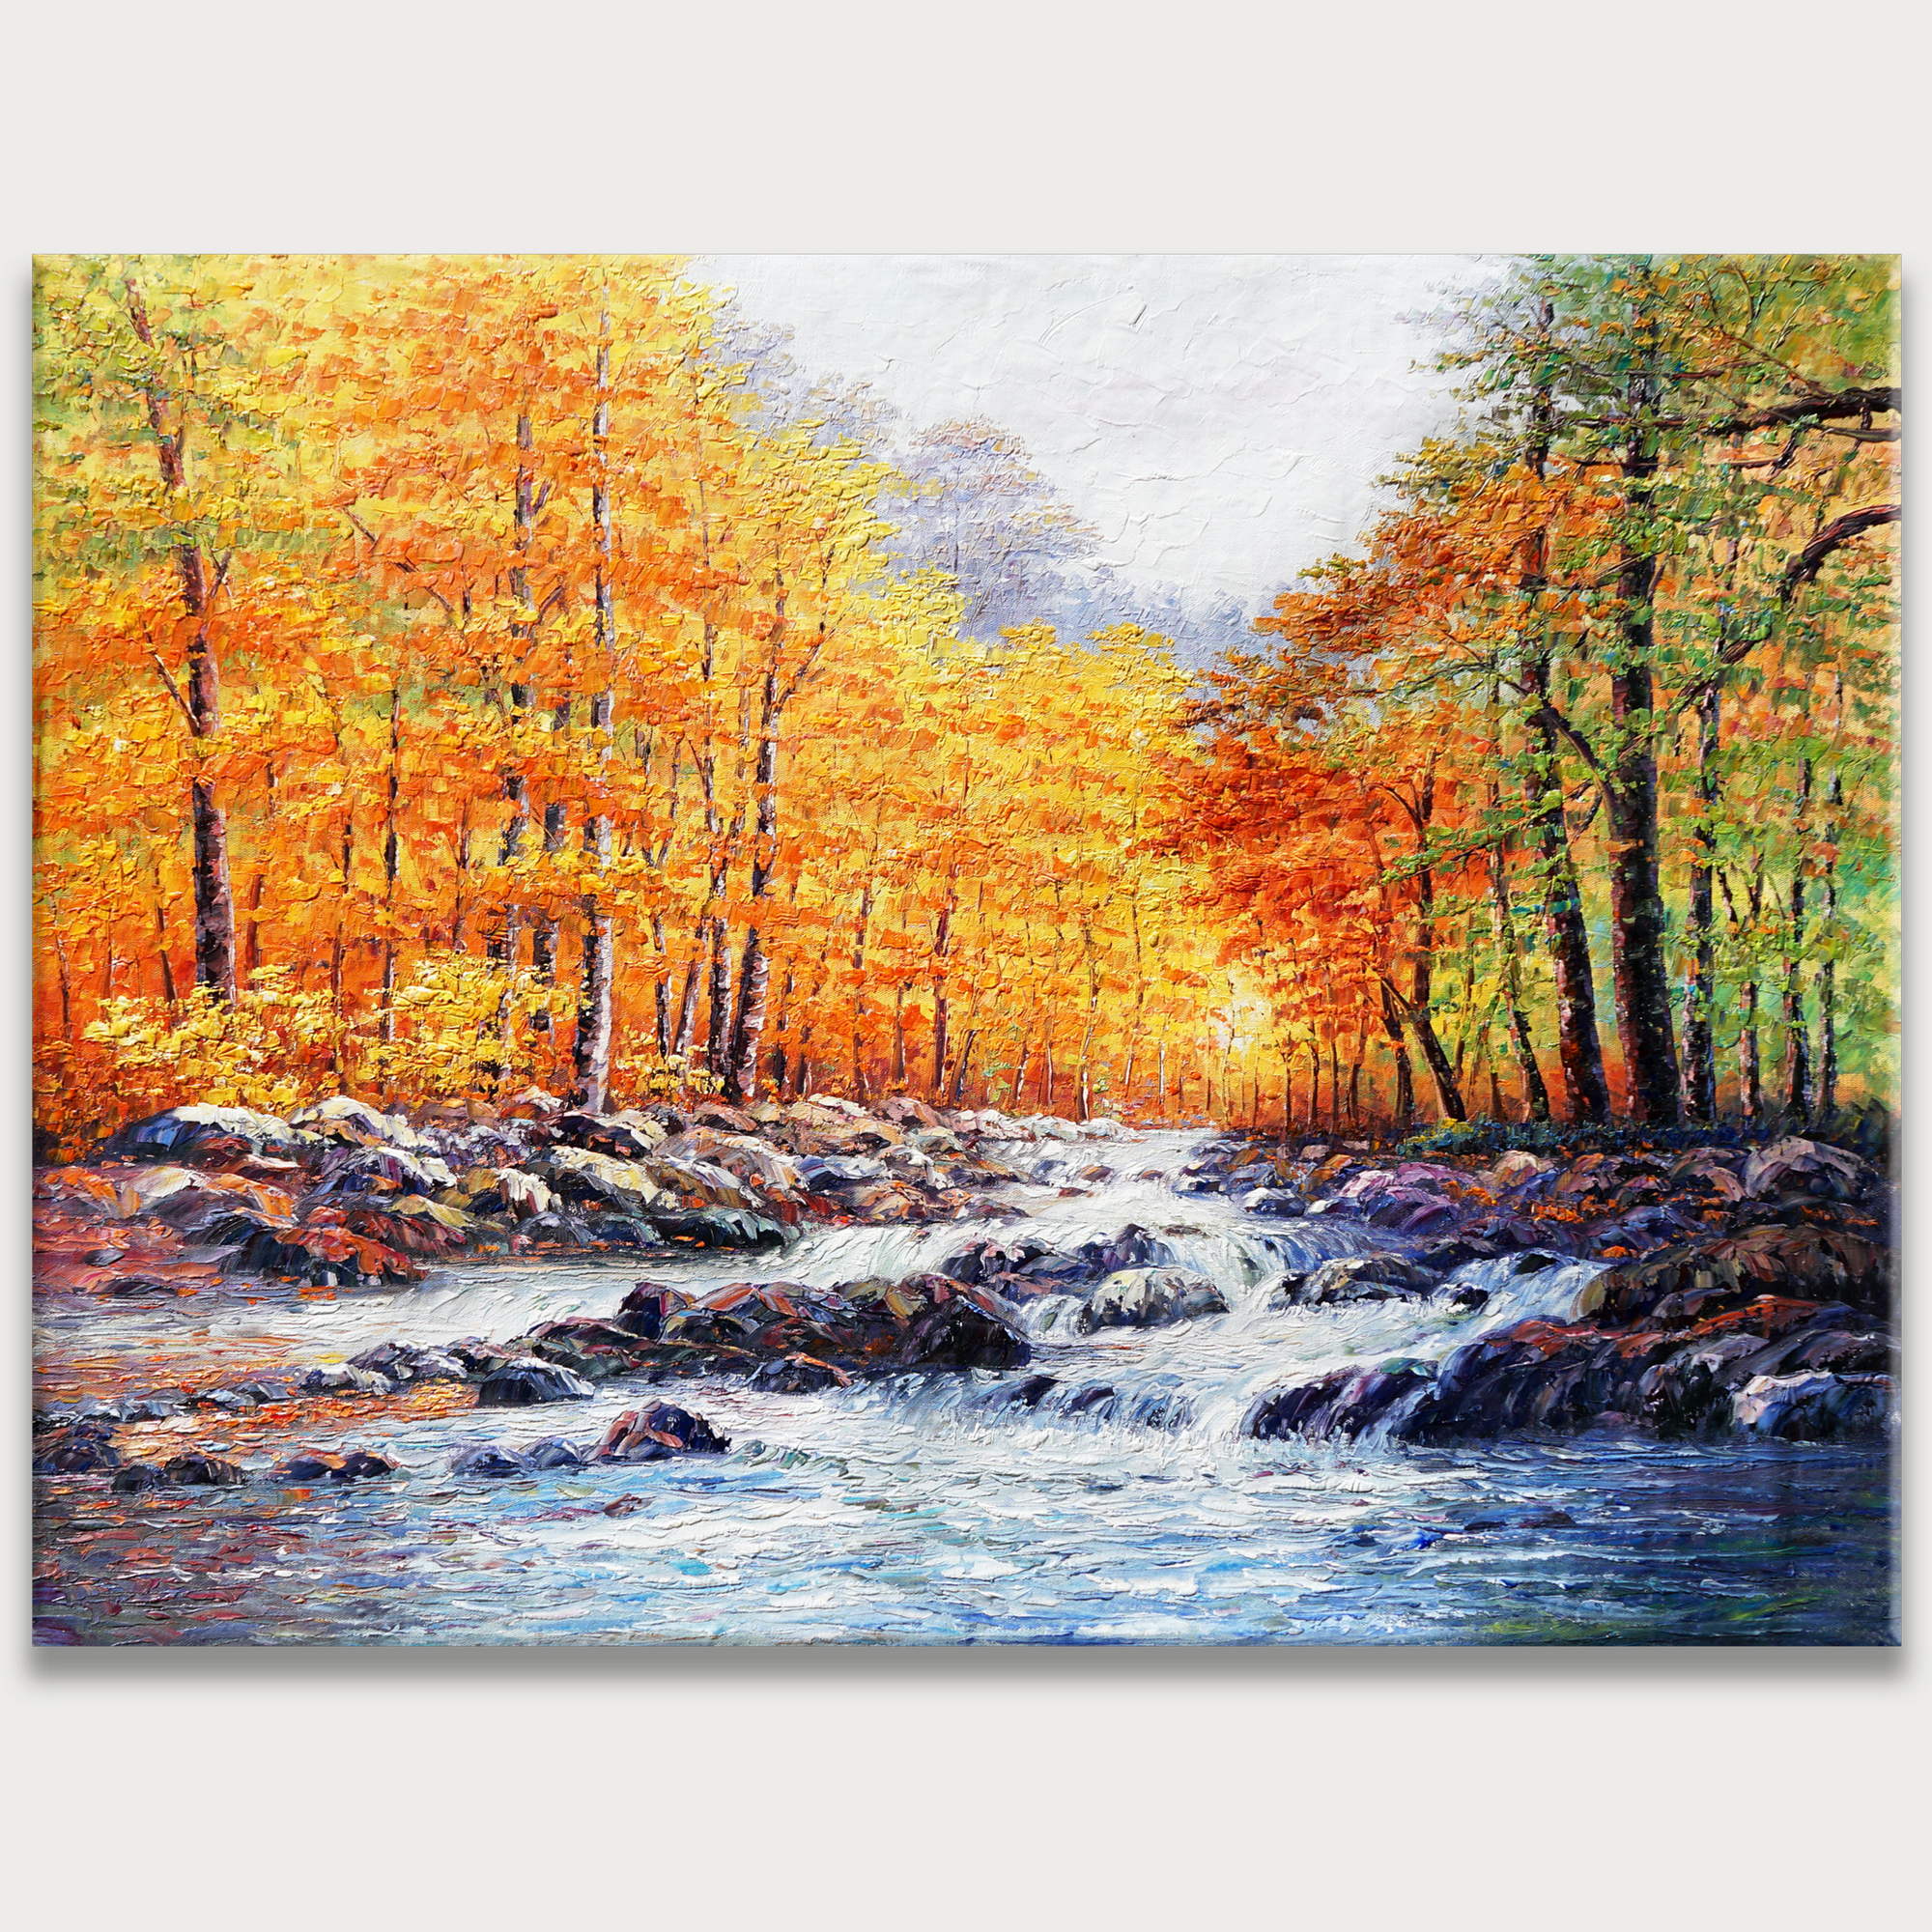 Hand painted Autumnal River Landscape 75x100cm